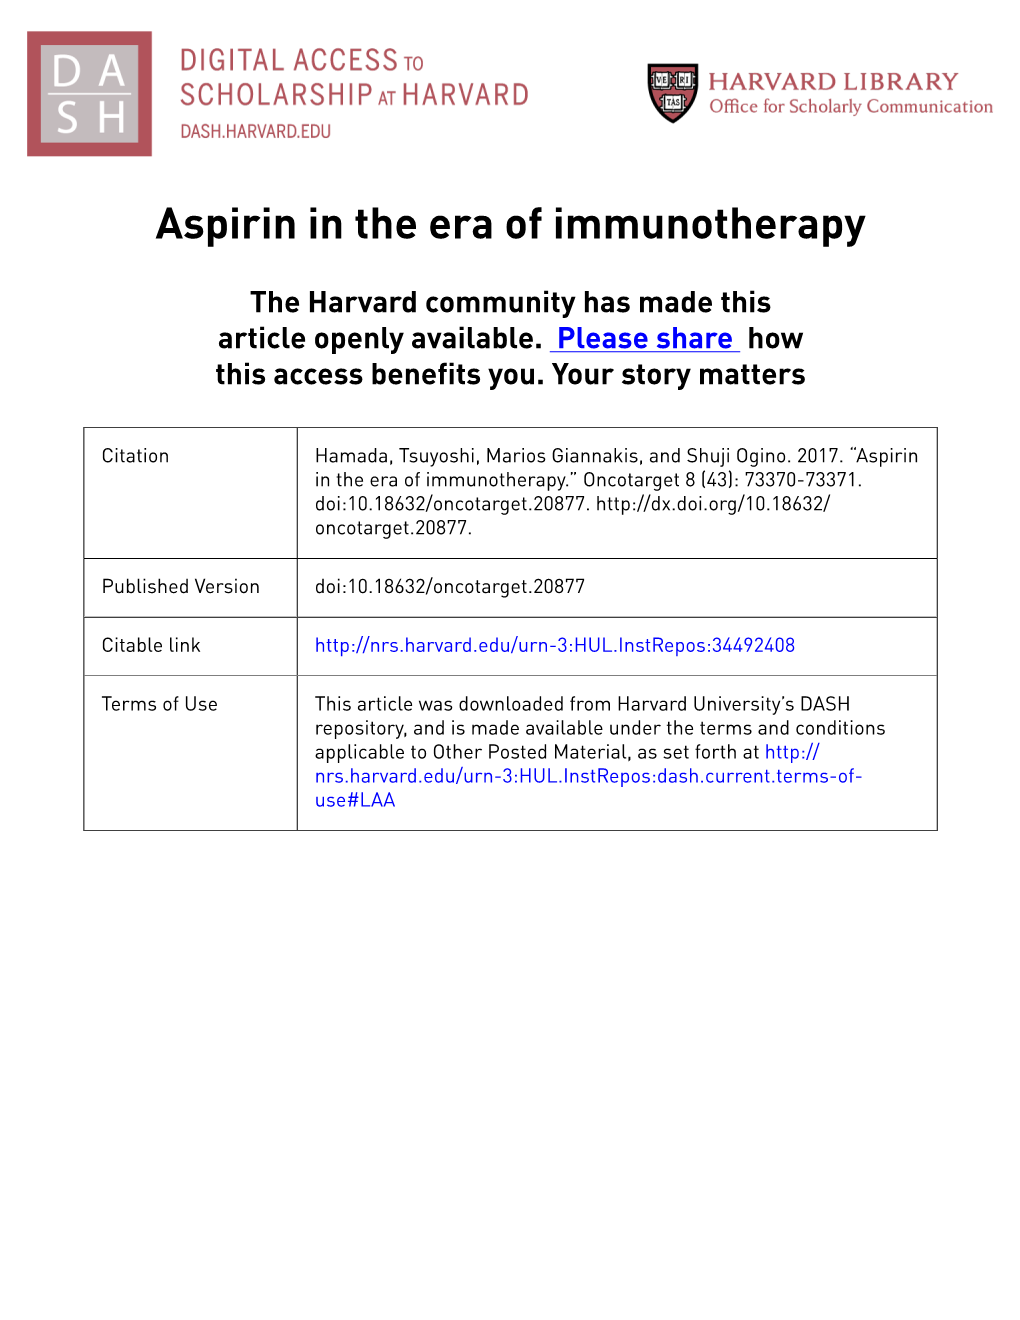 Aspirin in the Era of Immunotherapy